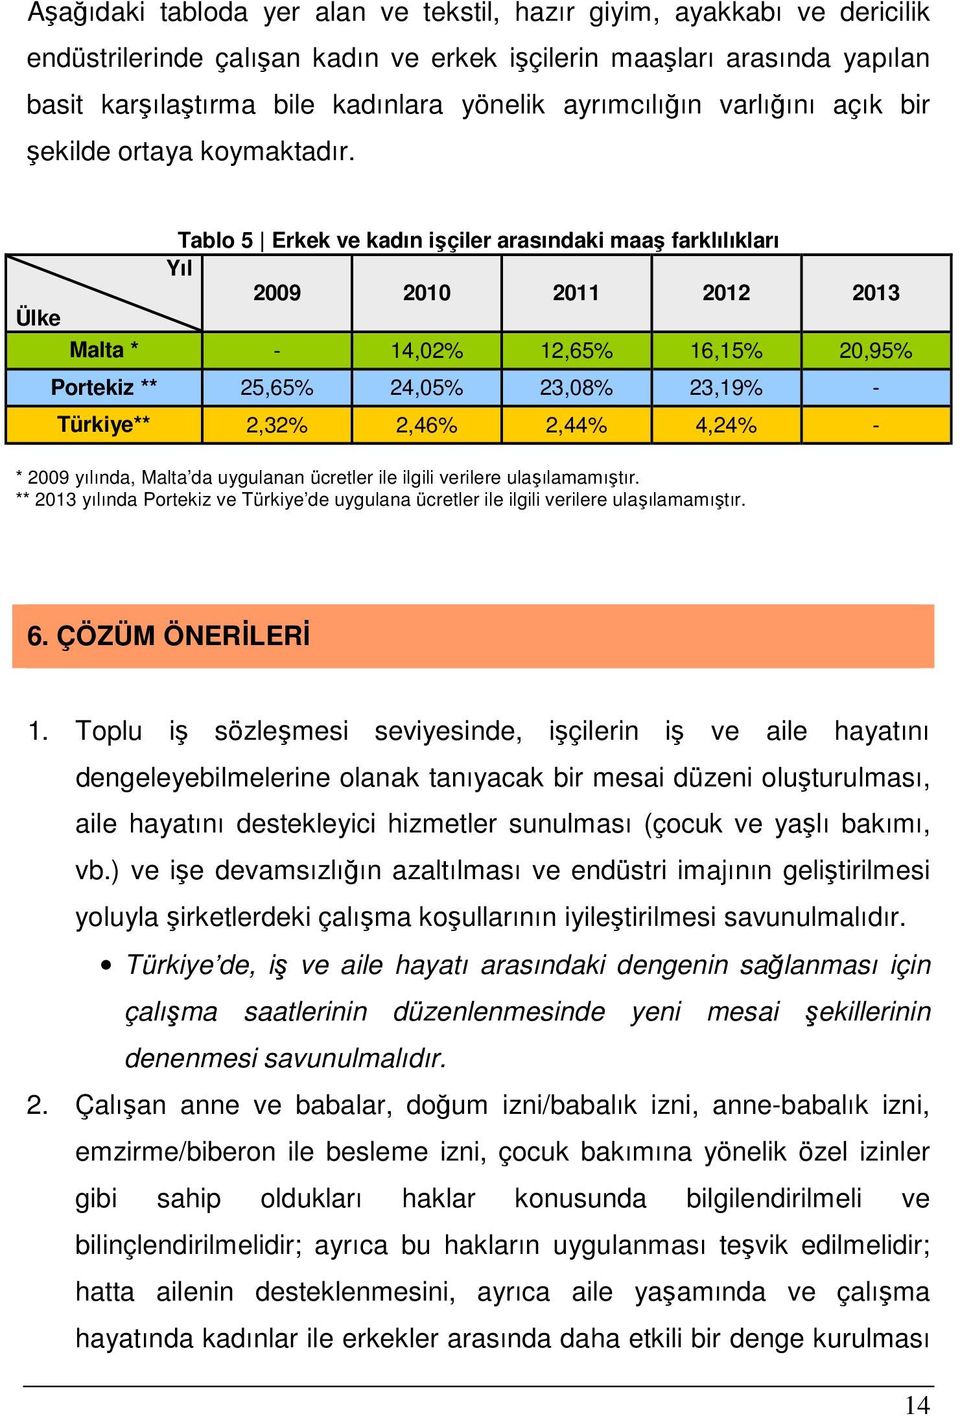 Ülke Tablo 5 Erkek ve kadın işçiler arasındaki maaş farklılıkları Yıl 2009 2010 2011 2012 2013 Malta * - 14,02% 12,65% 16,15% 20,95% Portekiz ** 25,65% 24,05% 23,08% 23,19% - Türkiye** 2,32% 2,46%